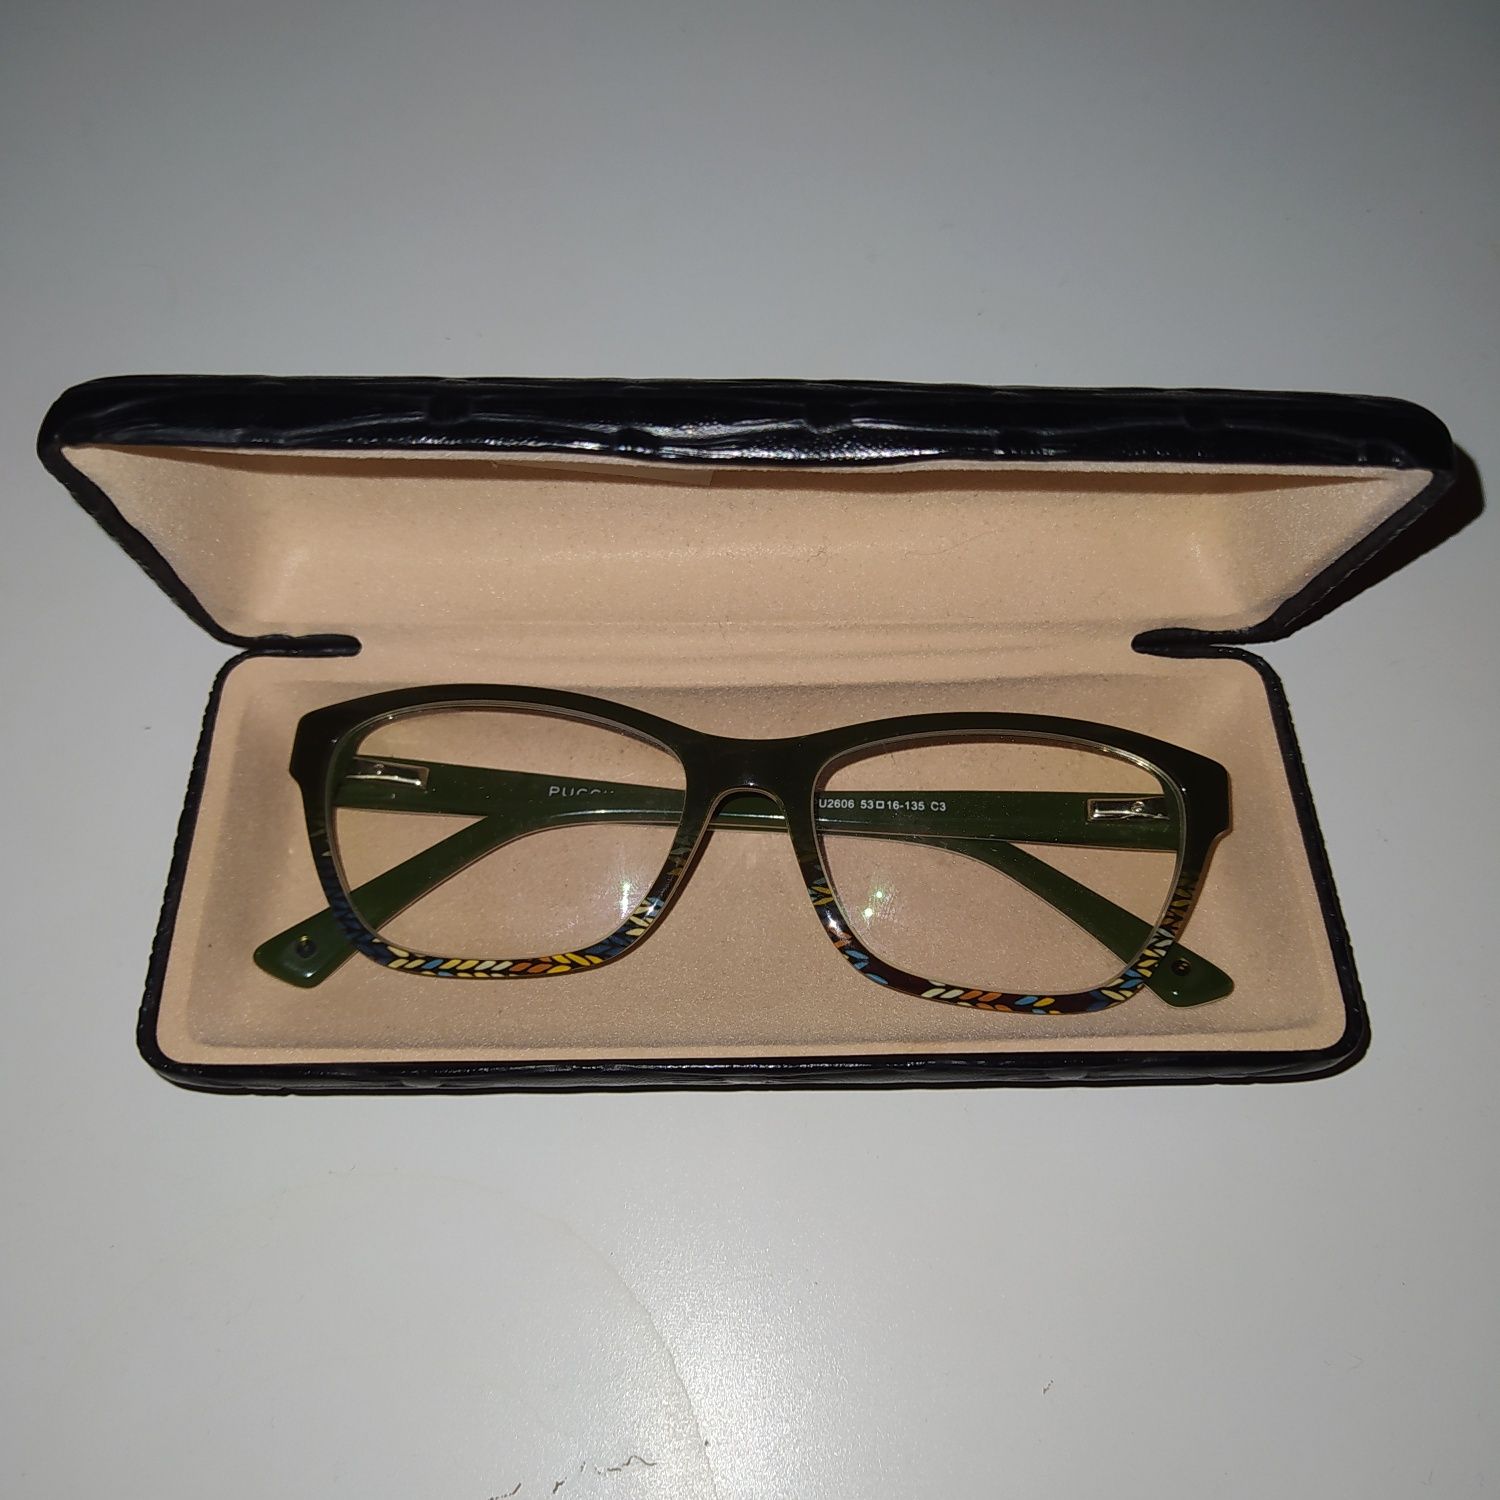 Oprawki damskie do okularów korekcyjnych